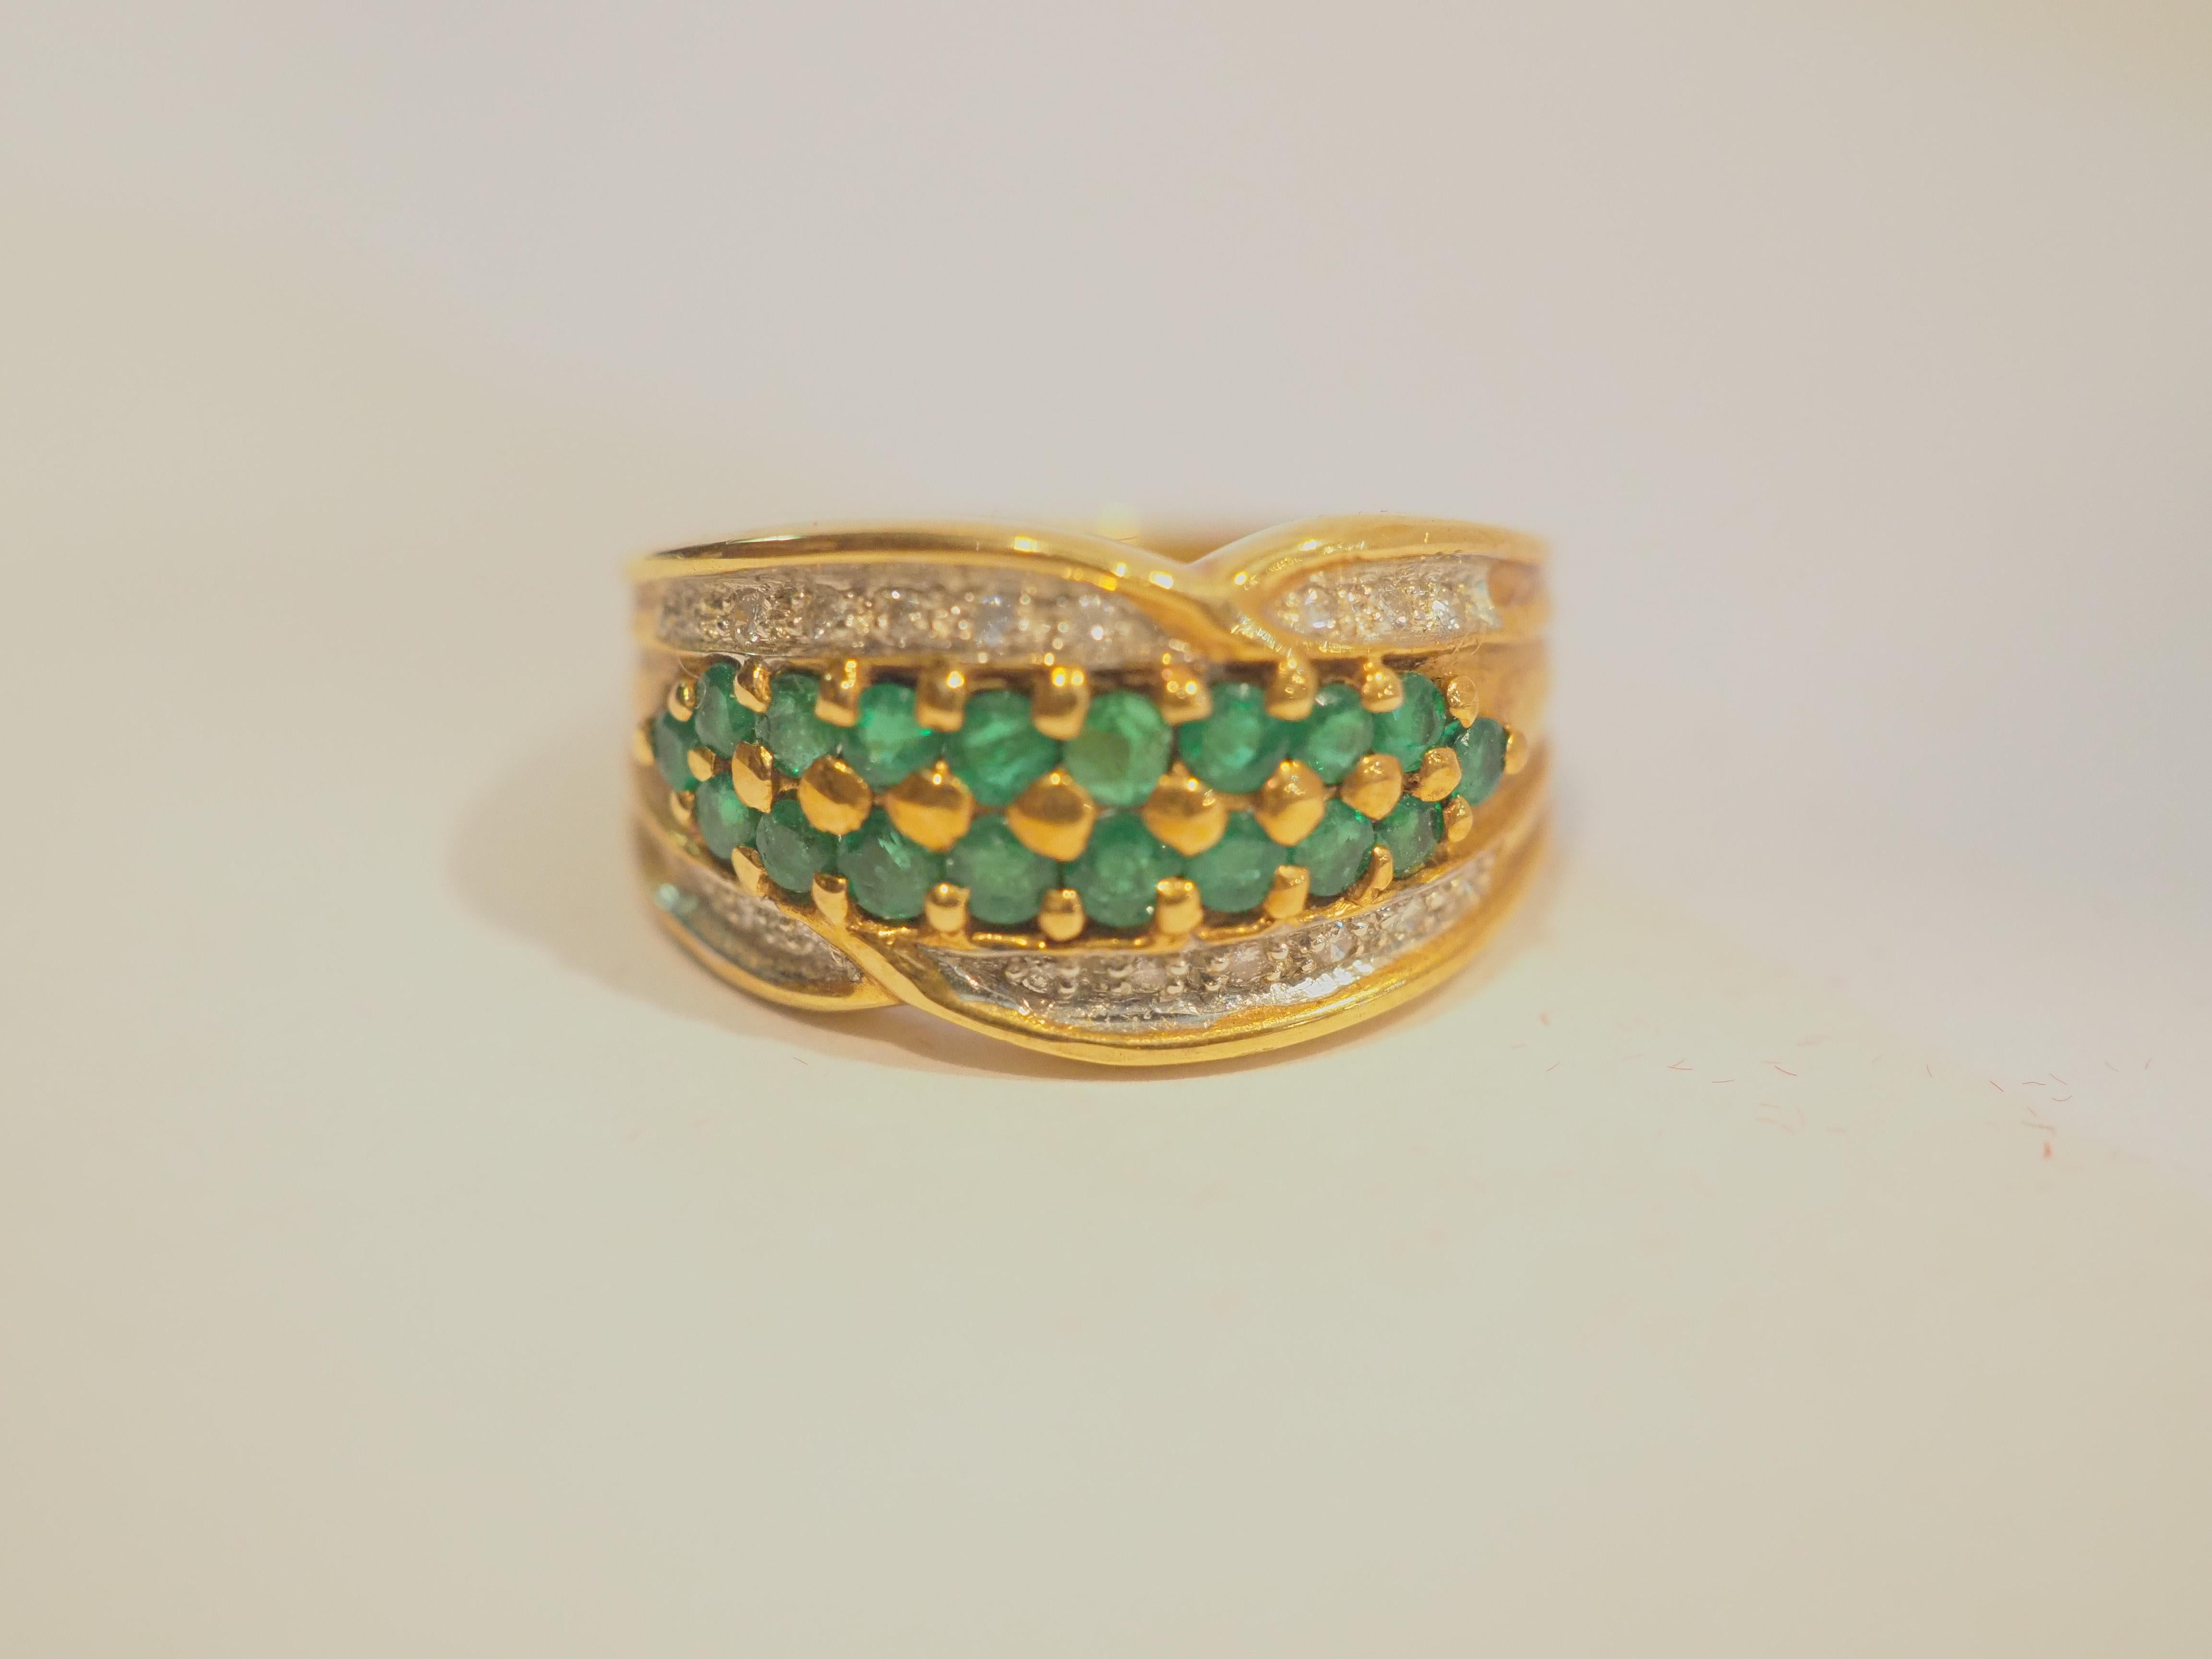 Ein wunderschöner, luxuriöser, klobiger und ausgefallener Neo-Vintage-Ring, der ungetragen ist. Dieser Ring ist tadellos gestaltet. Die rund geschliffenen Smaragde haben einen schönen tiefgrünen Farbton, und die runden Diamanten sind sehr hell und